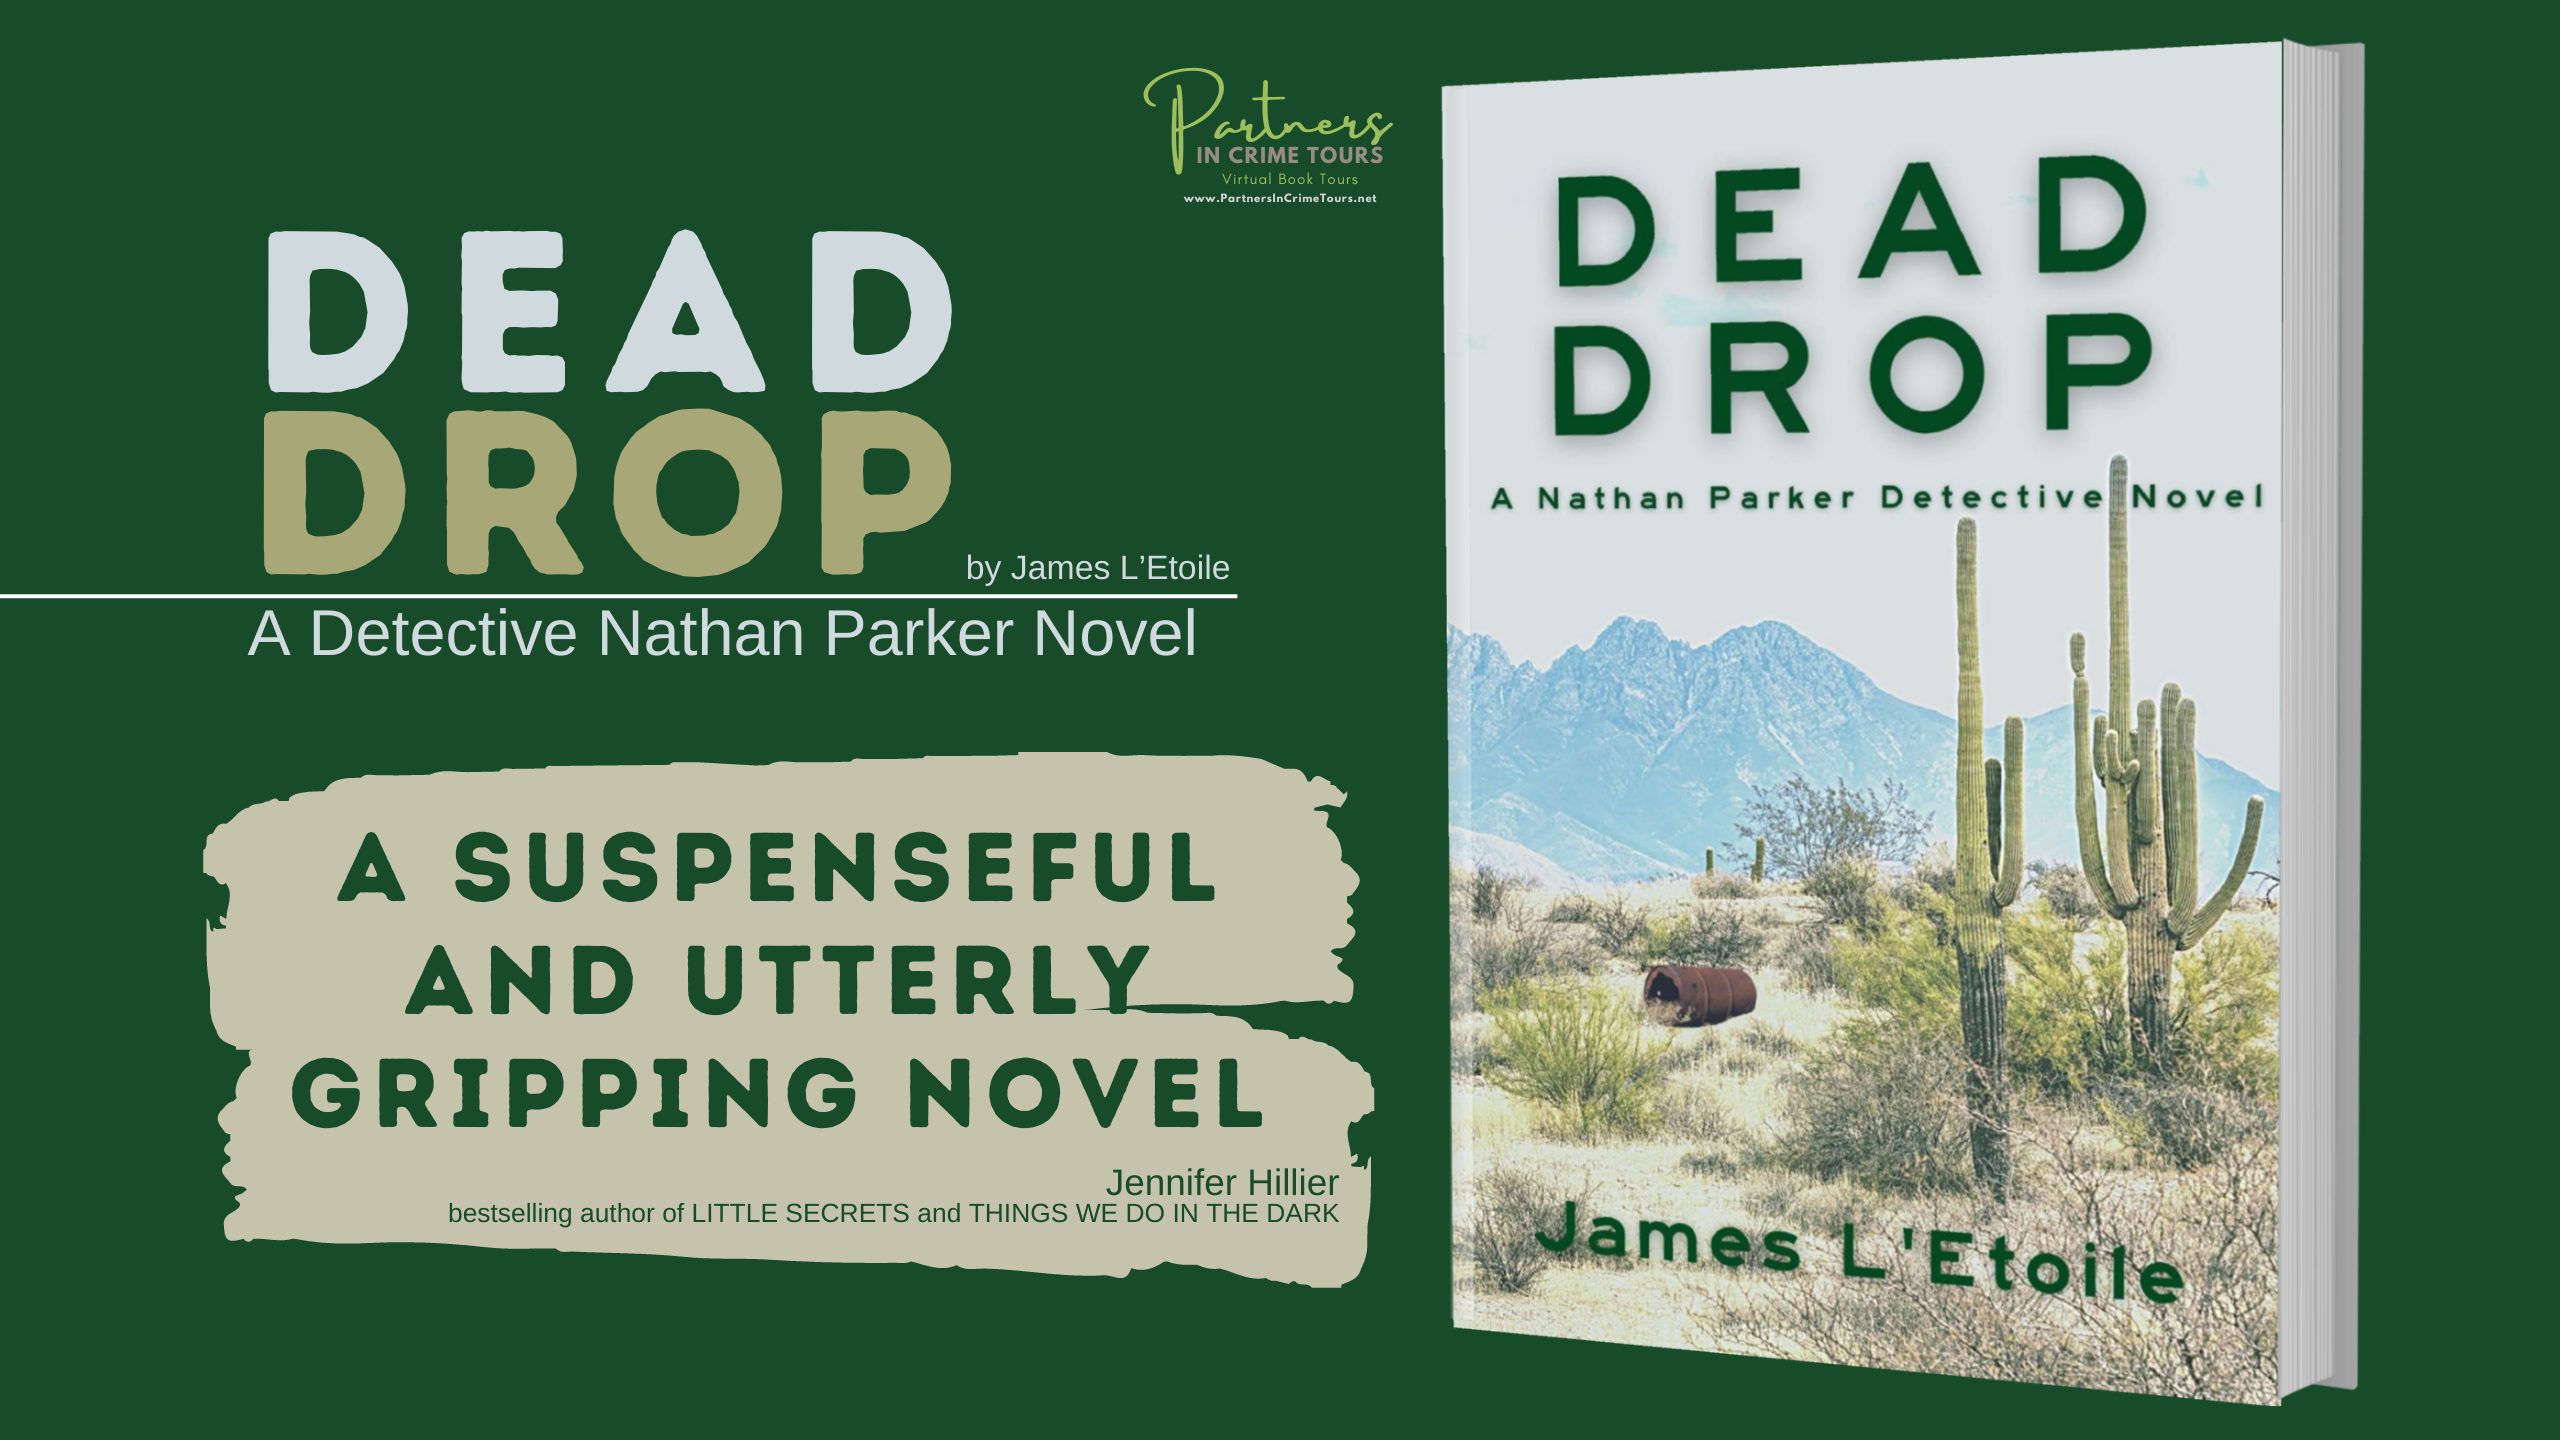 Dead Drop by James L’Etoile